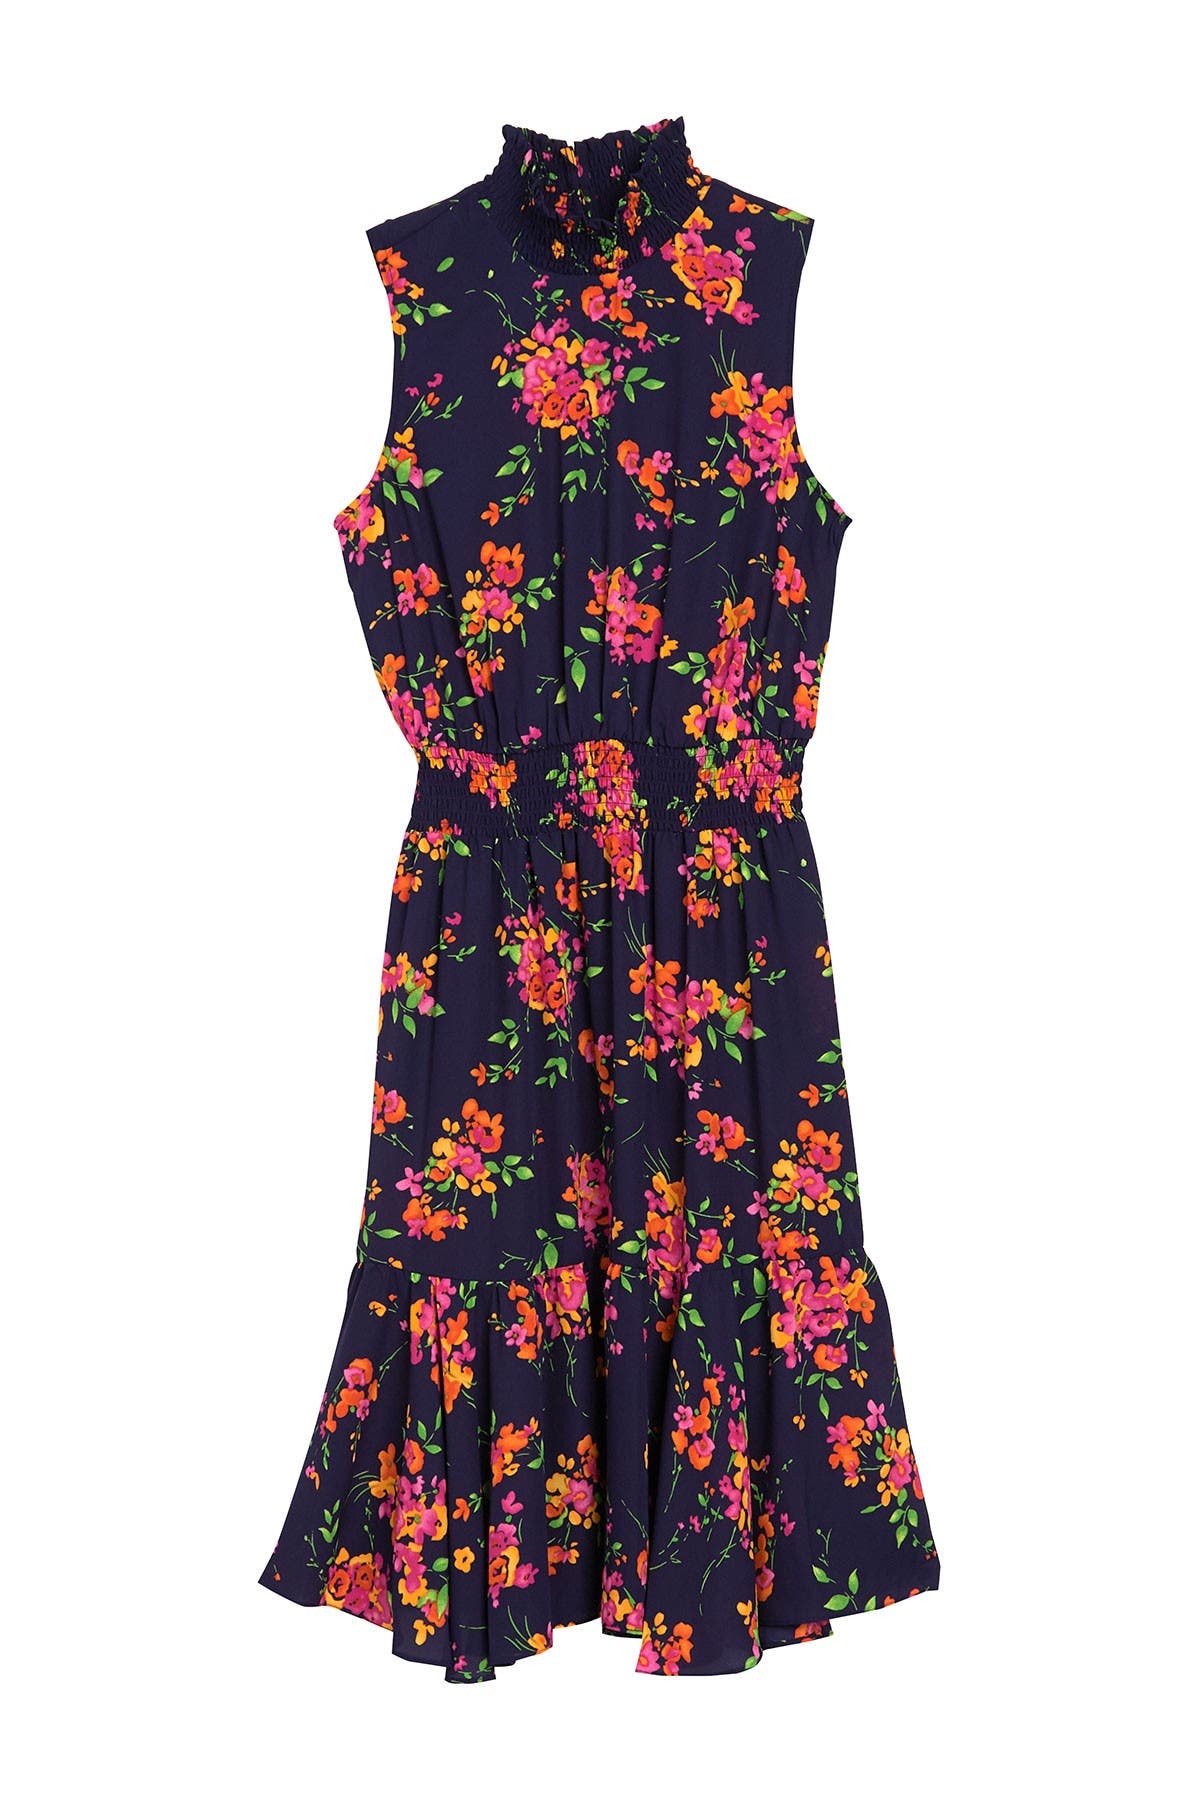 NANETTE nanette lepore | Floral Smocked Ruffle Midi Dress | Nordstrom Rack